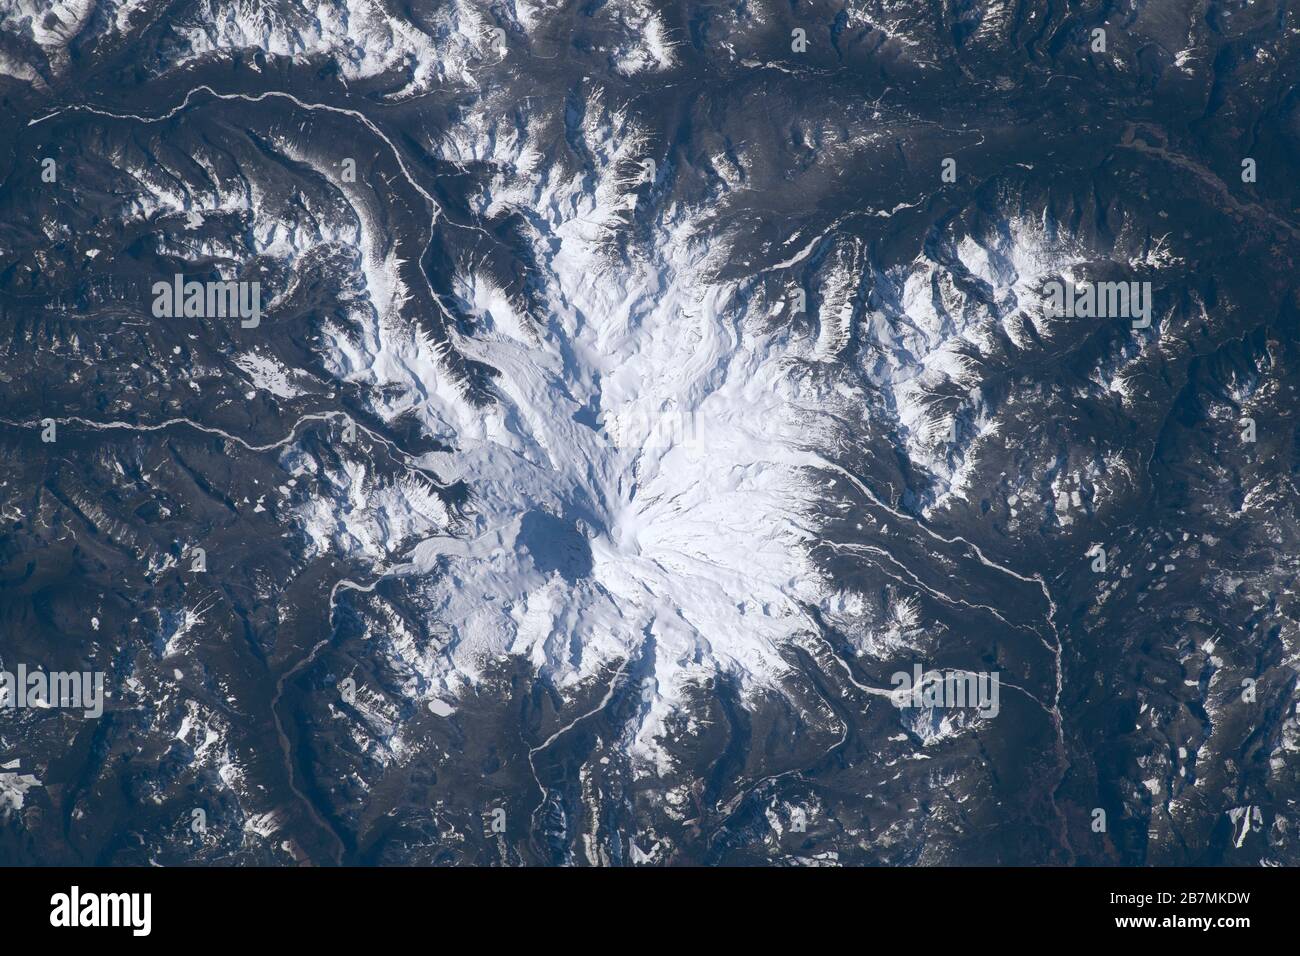 MOUNT RAINIER, USA - 19 Feb 2020 - Mount Rainier è visto dalla Stazione spaziale Internazionale come orbitato 266 miglia sopra Washington state USA Foto Stock